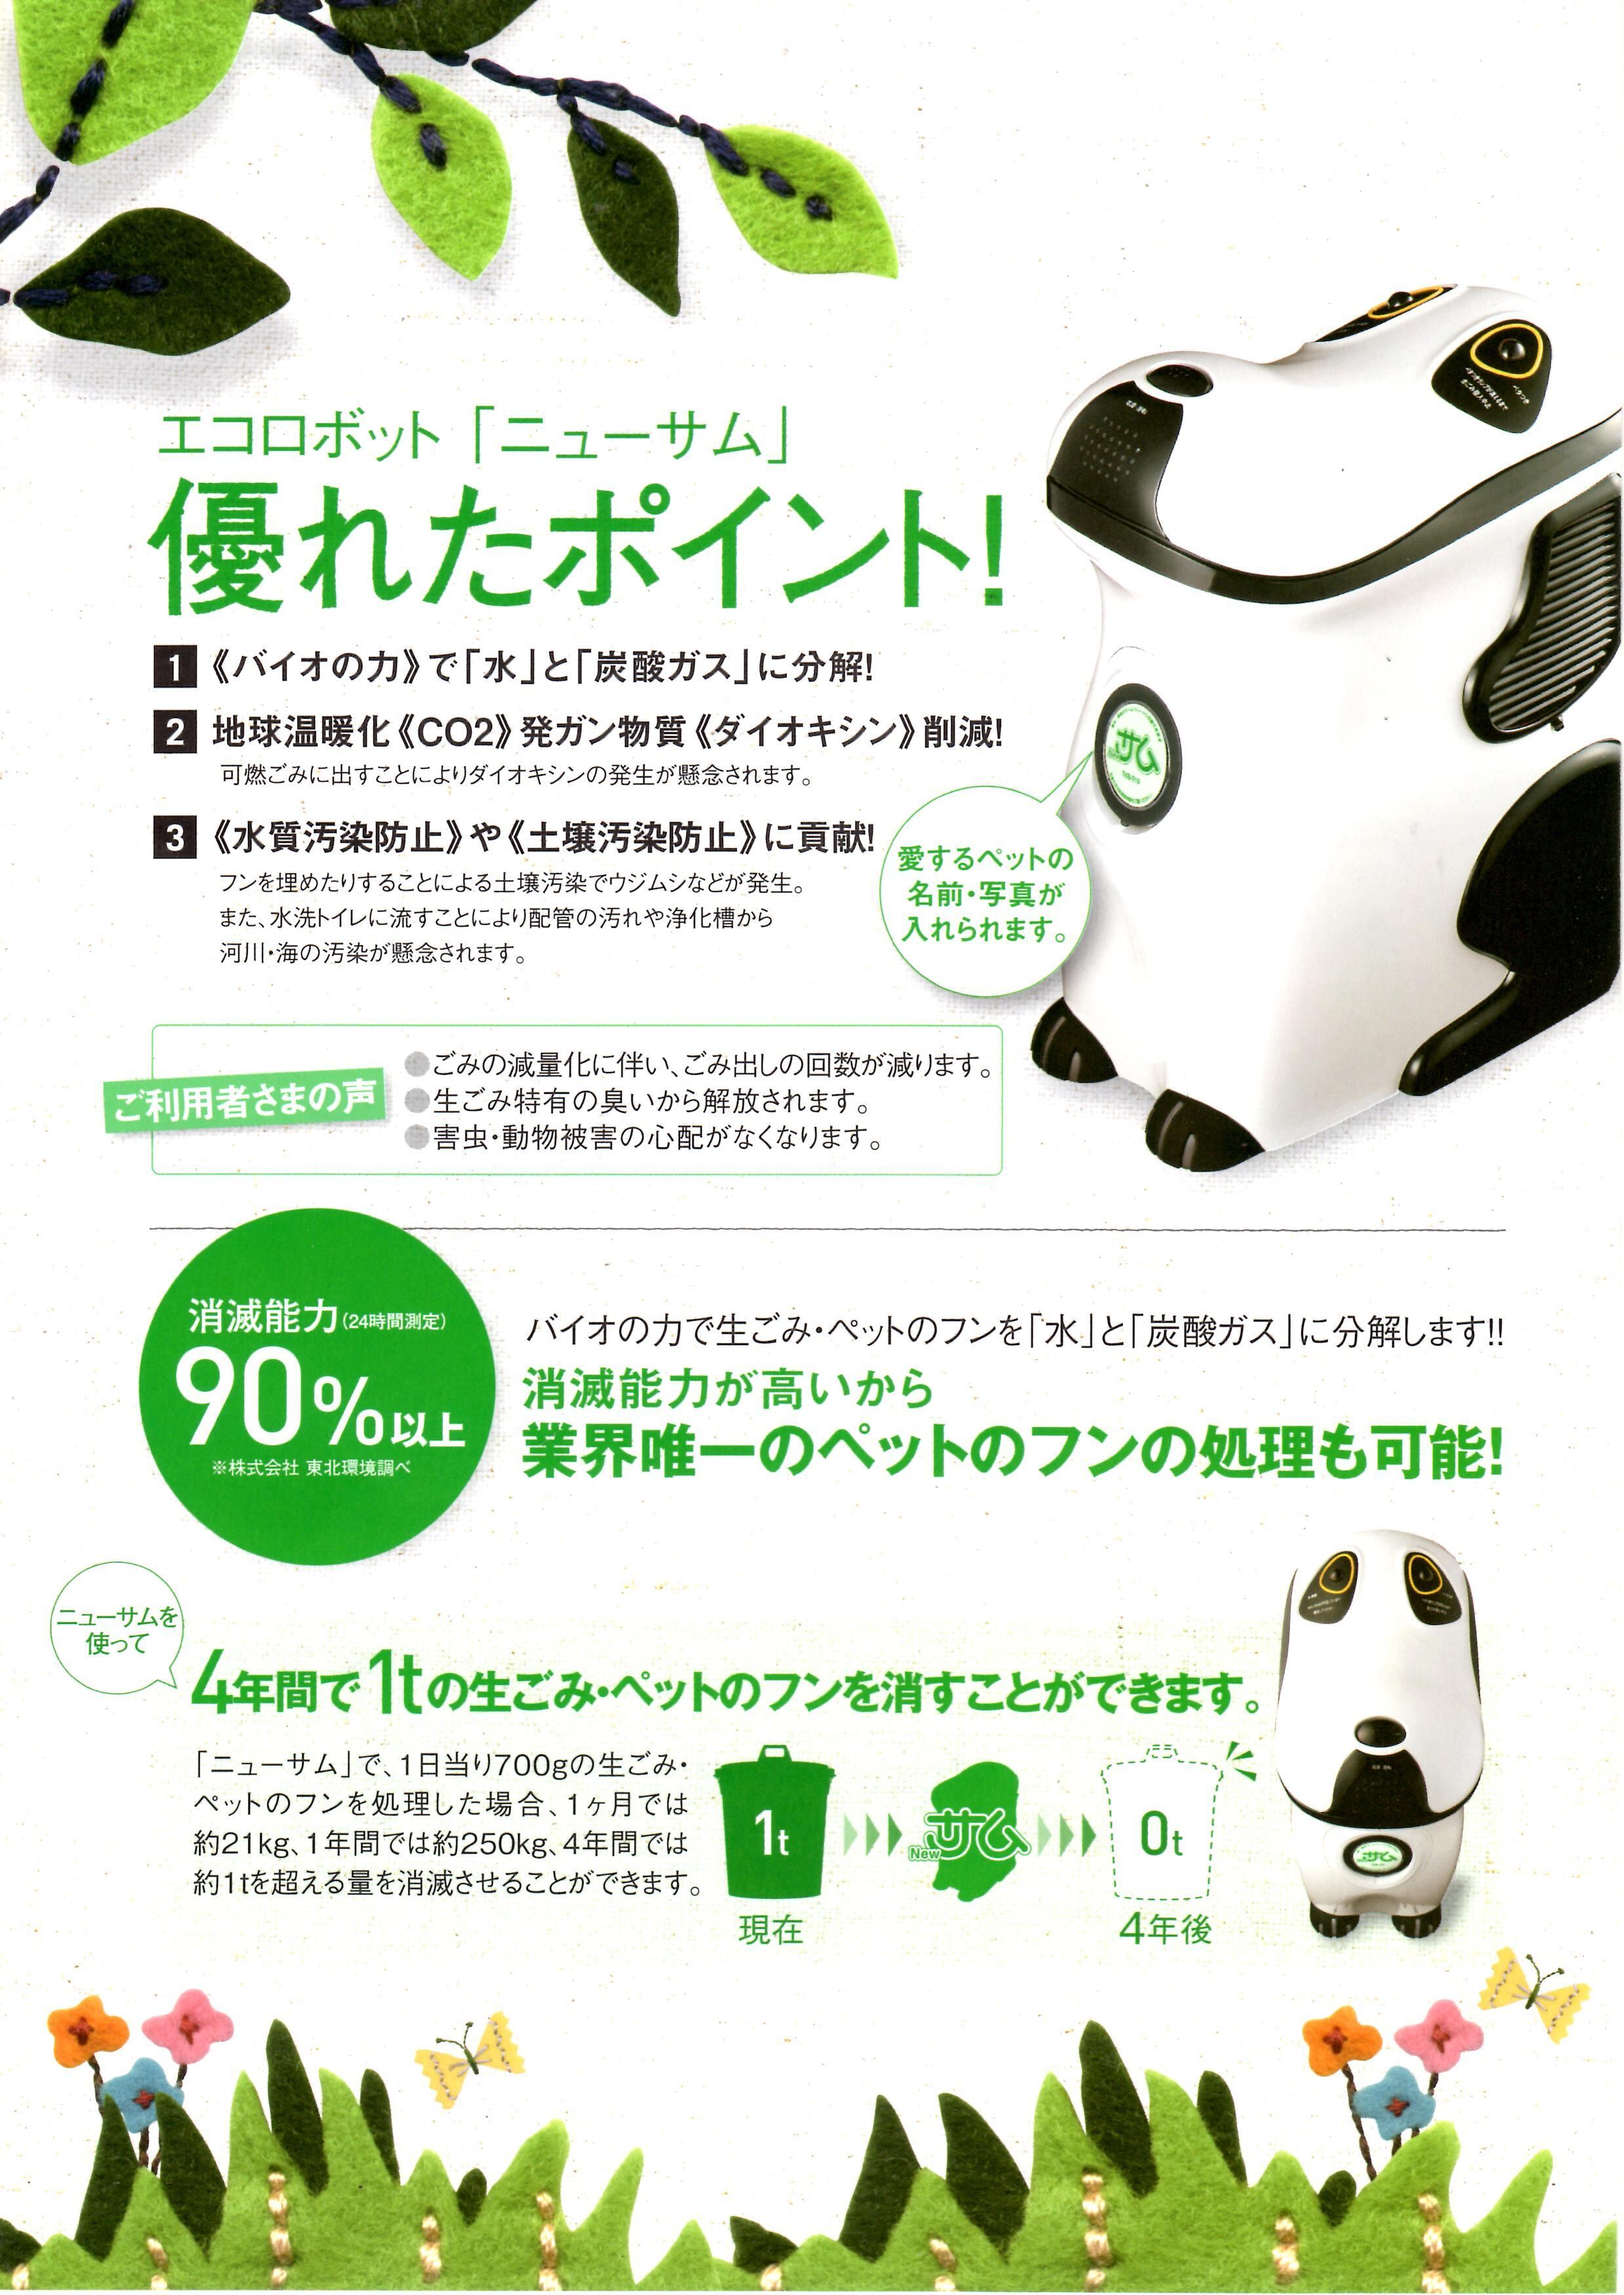 セール YACHIYO SHOP東北環境 生ゴミ処理機 ペットのフン処理ロボット